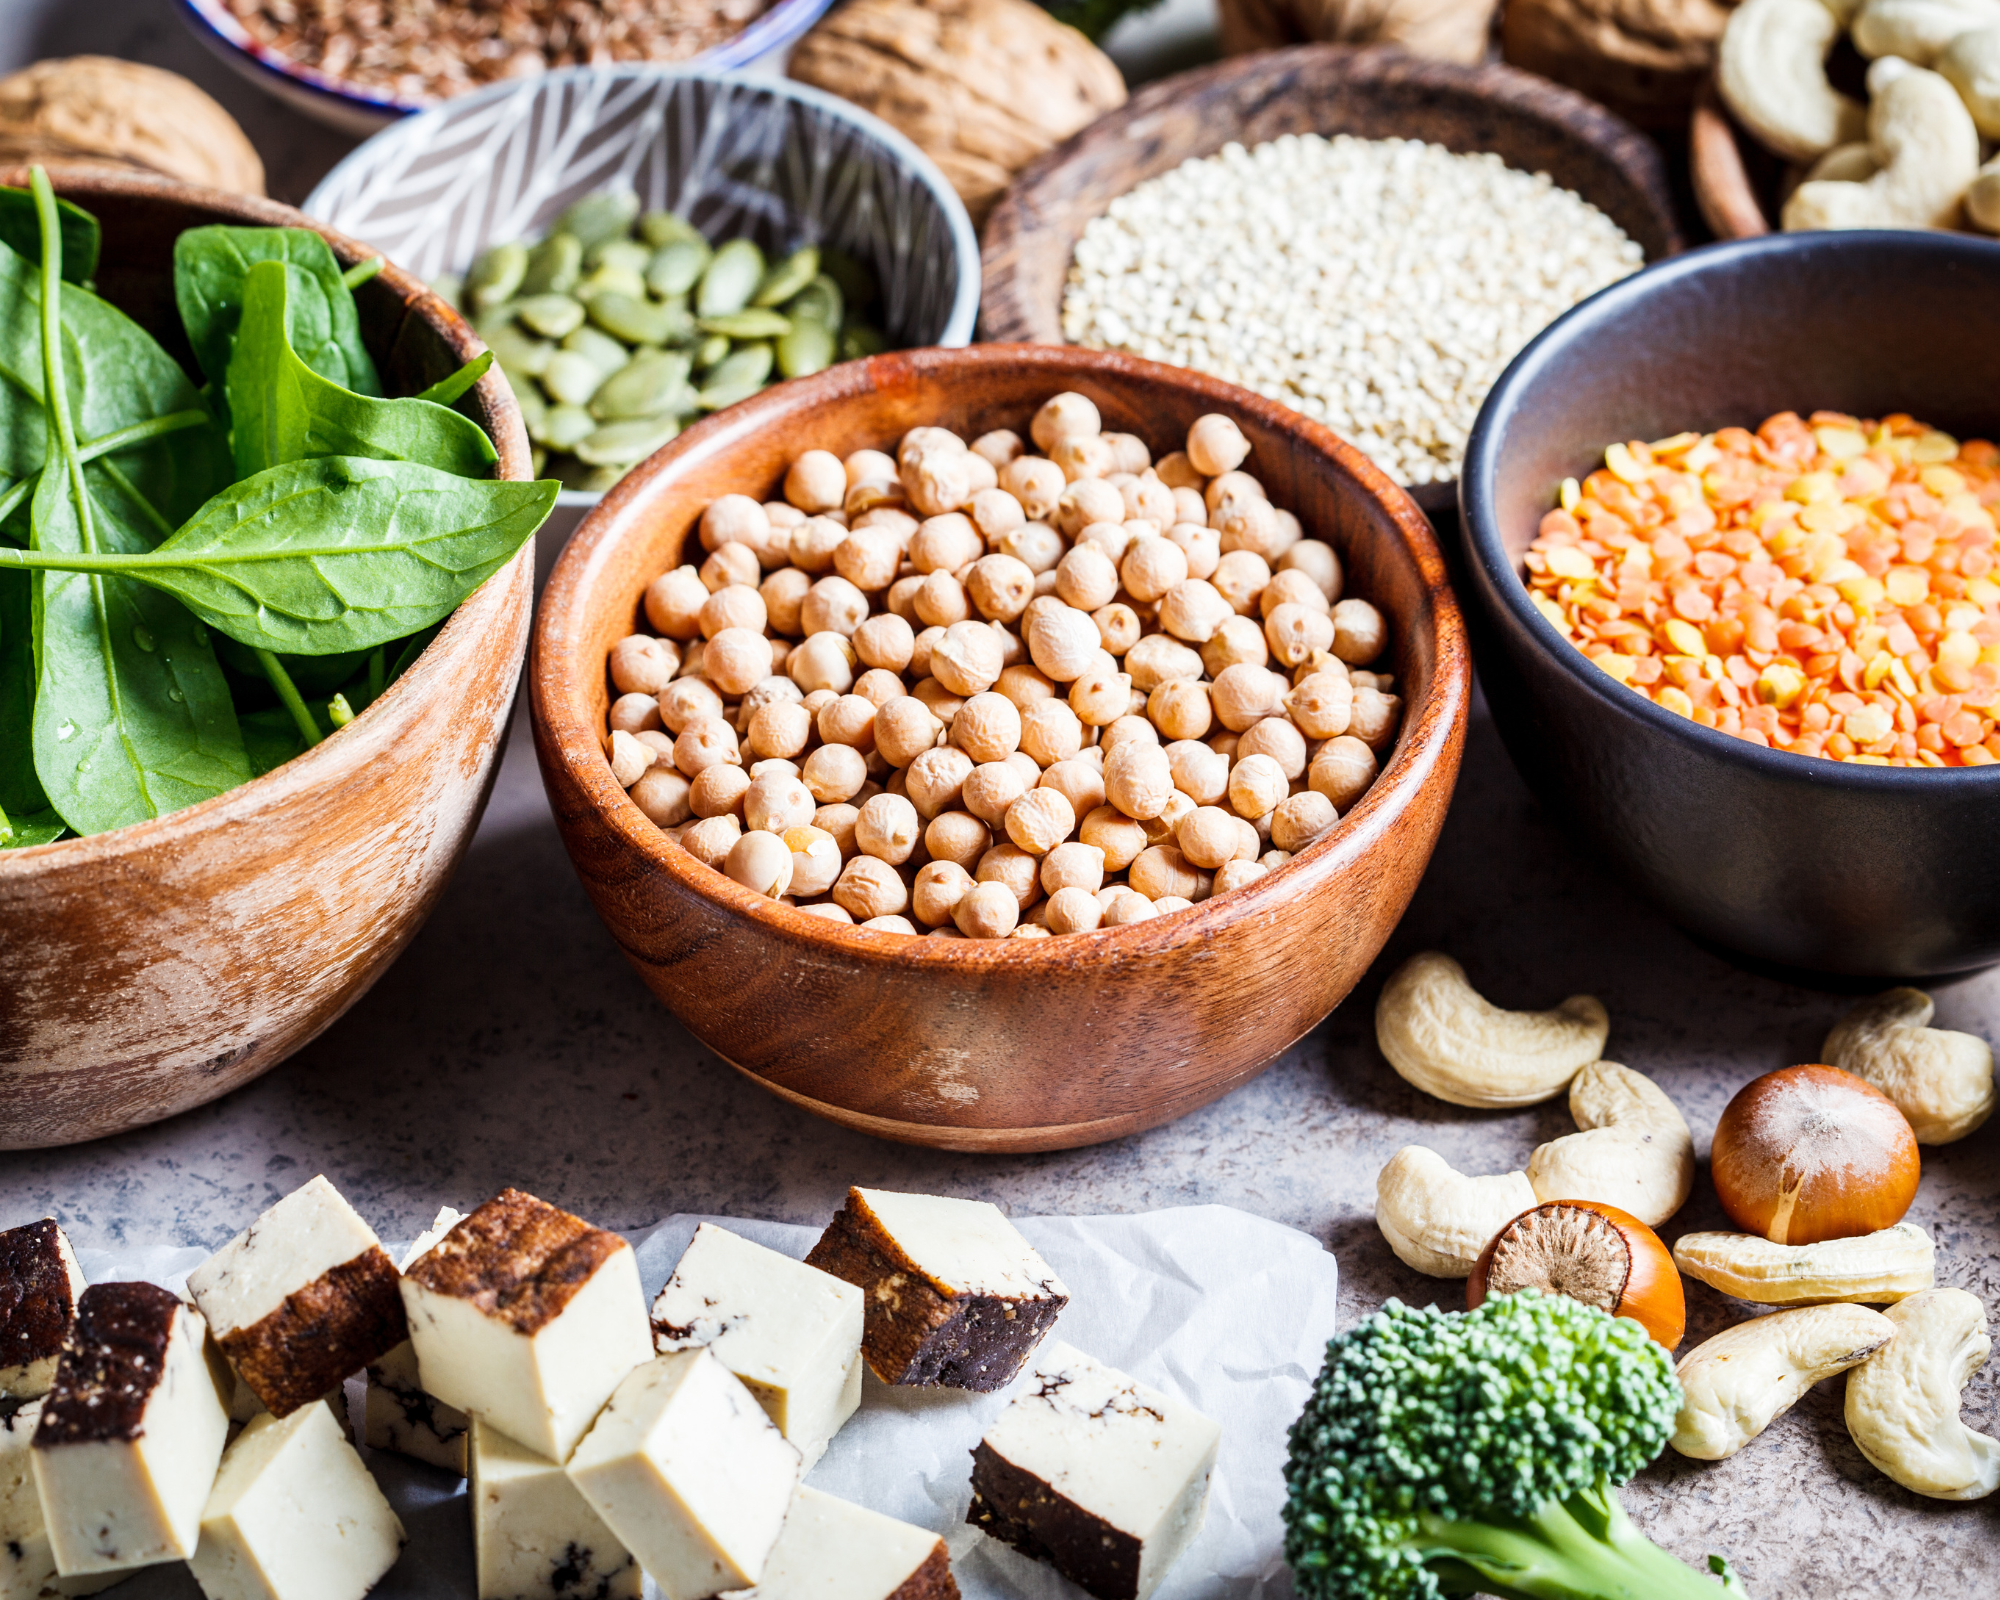 proteine in einer veganen ernährung, Bild von verschiedenen Eiweißquellen: Kichererbsen, Linsen, Erbsen, Spinat, Tofu